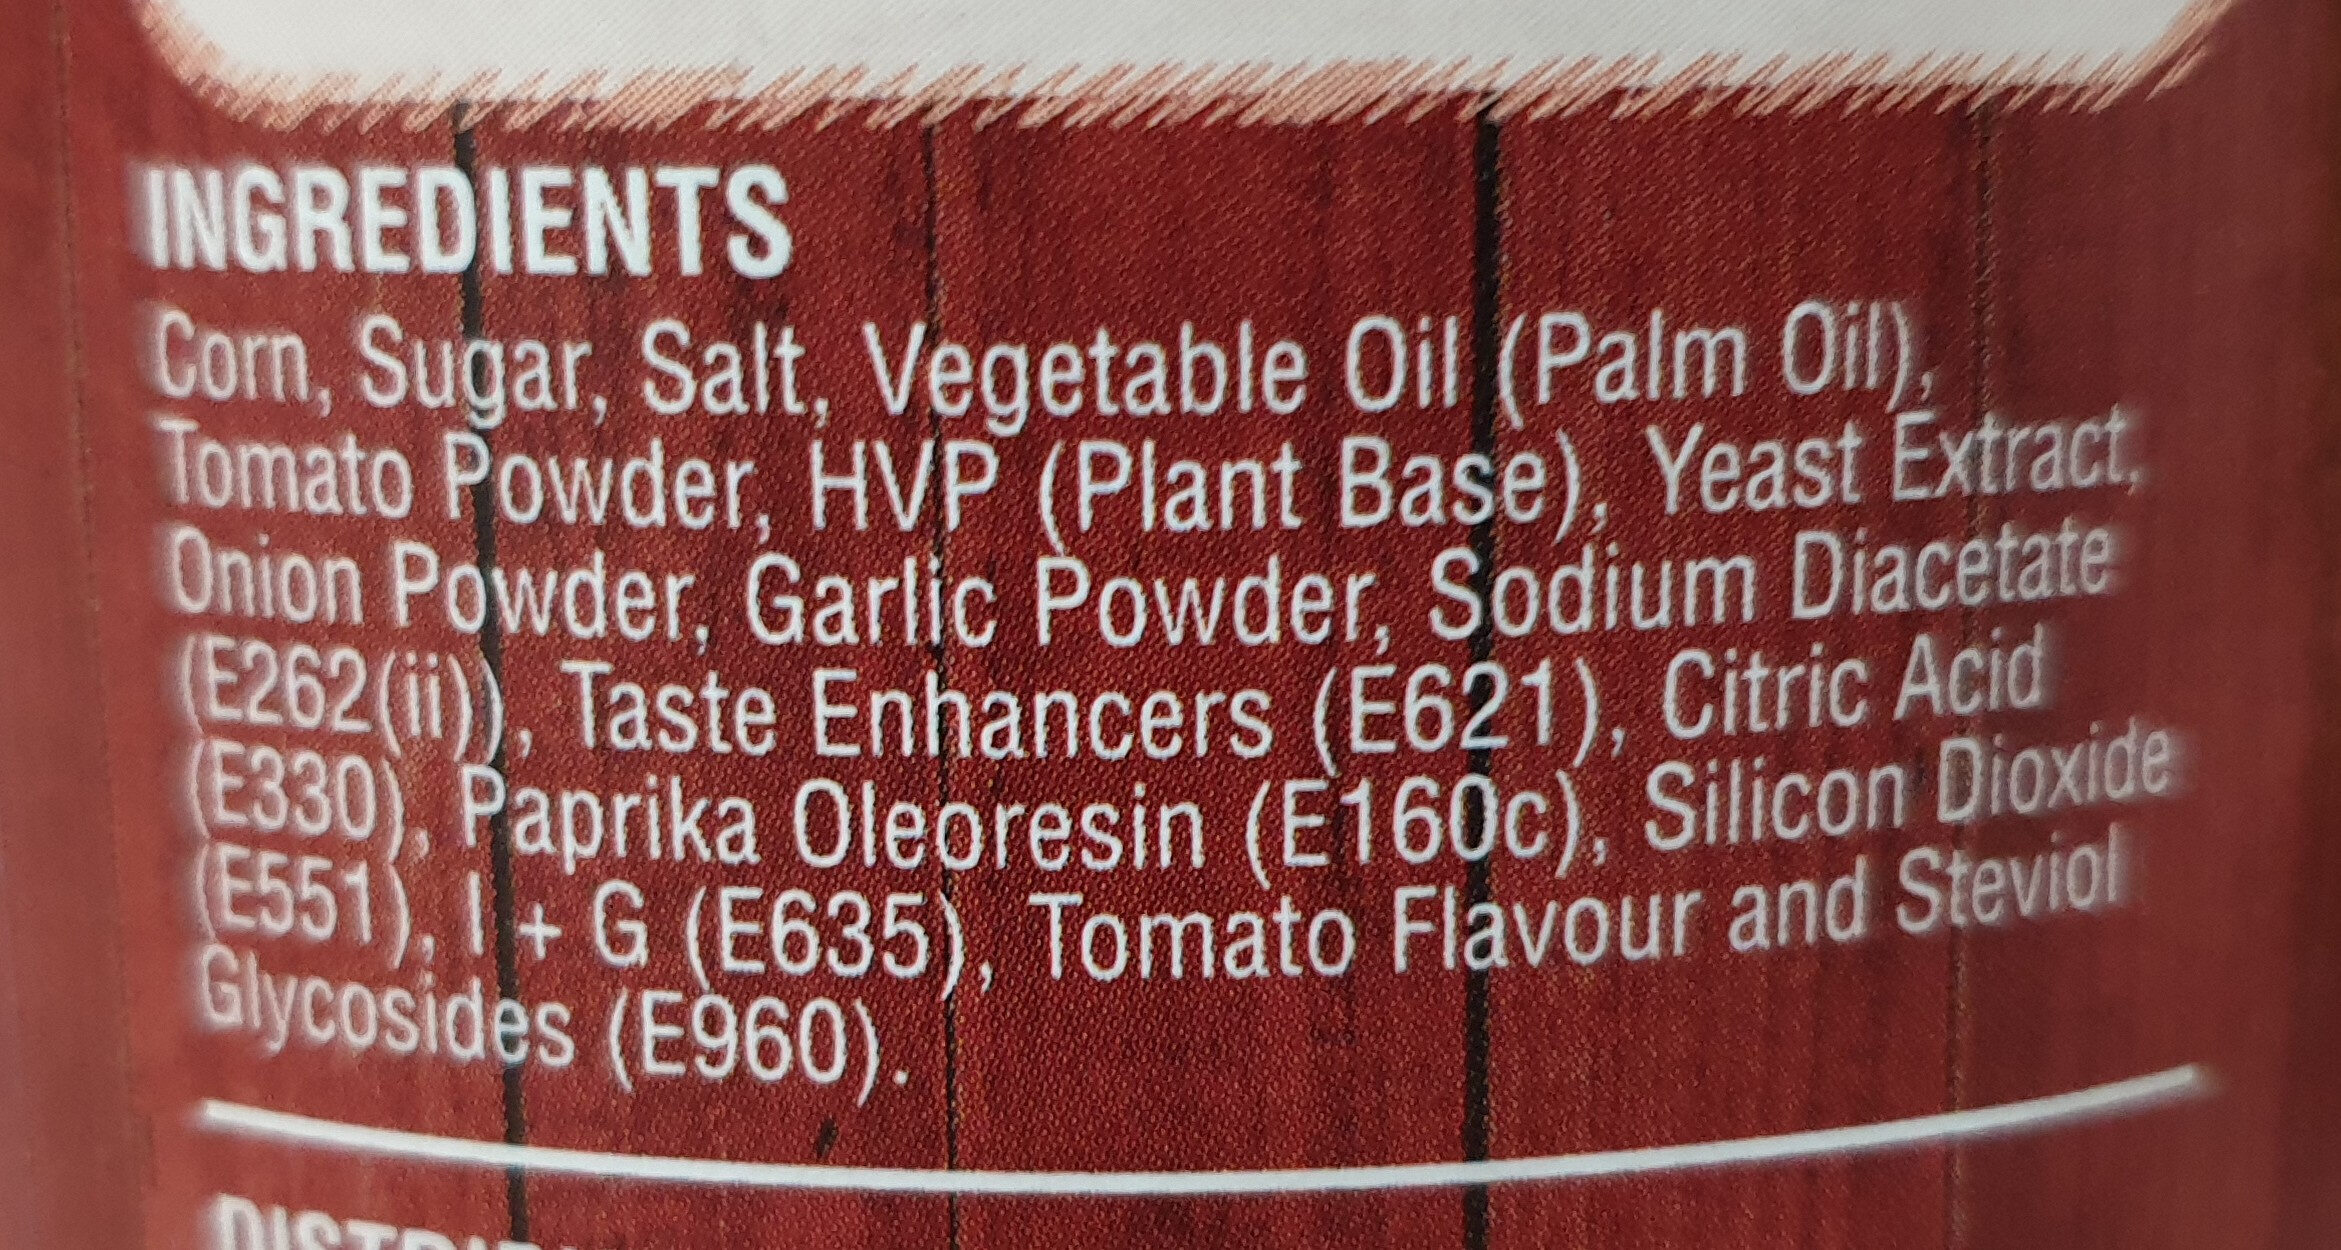 Tomato gourmet popcorn - Ingredients - en